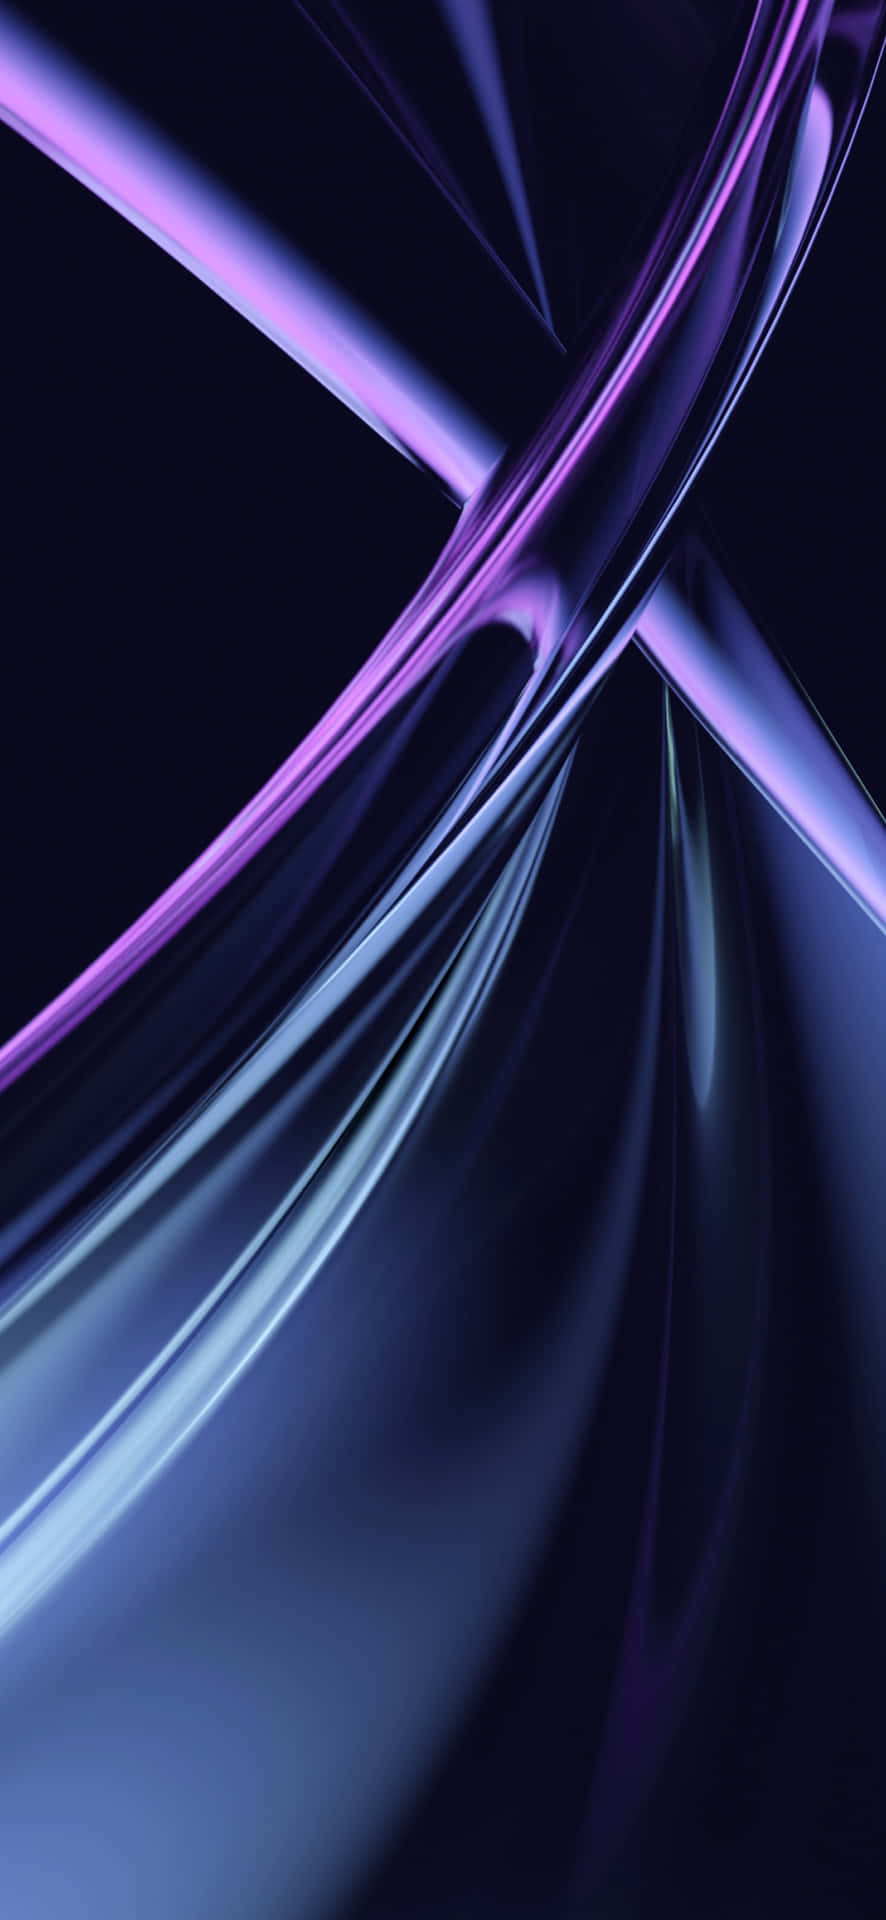 Abstract Blue Purple Light Streaks Wallpaper